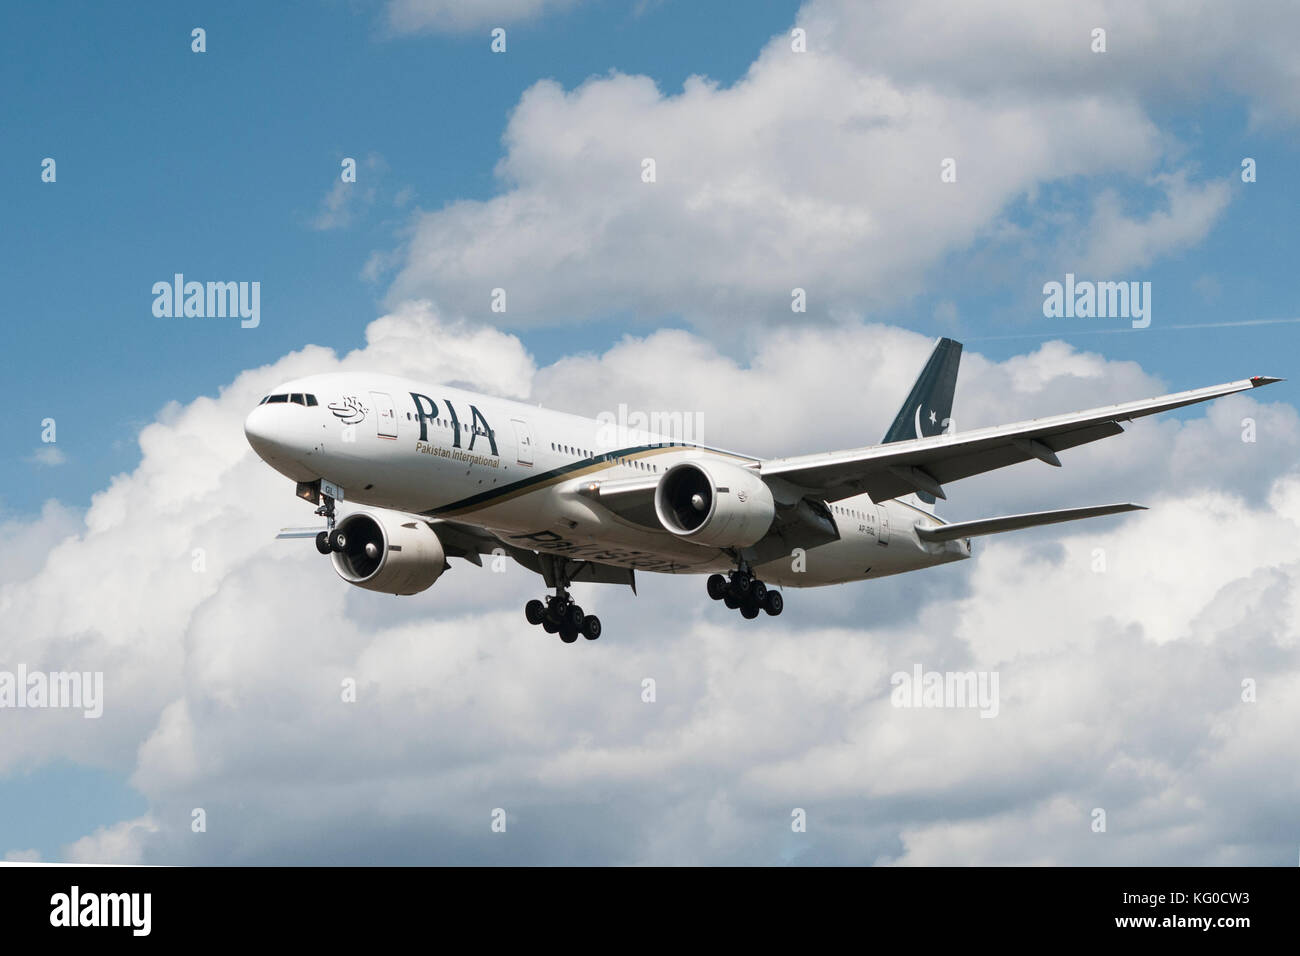 Londres, UK - 3 août, 2013 ; un Pakistan International Airlines (PIA) Boeing 777-240(ER) atterrit à l'aéroport d'Heathrow à Londres Banque D'Images